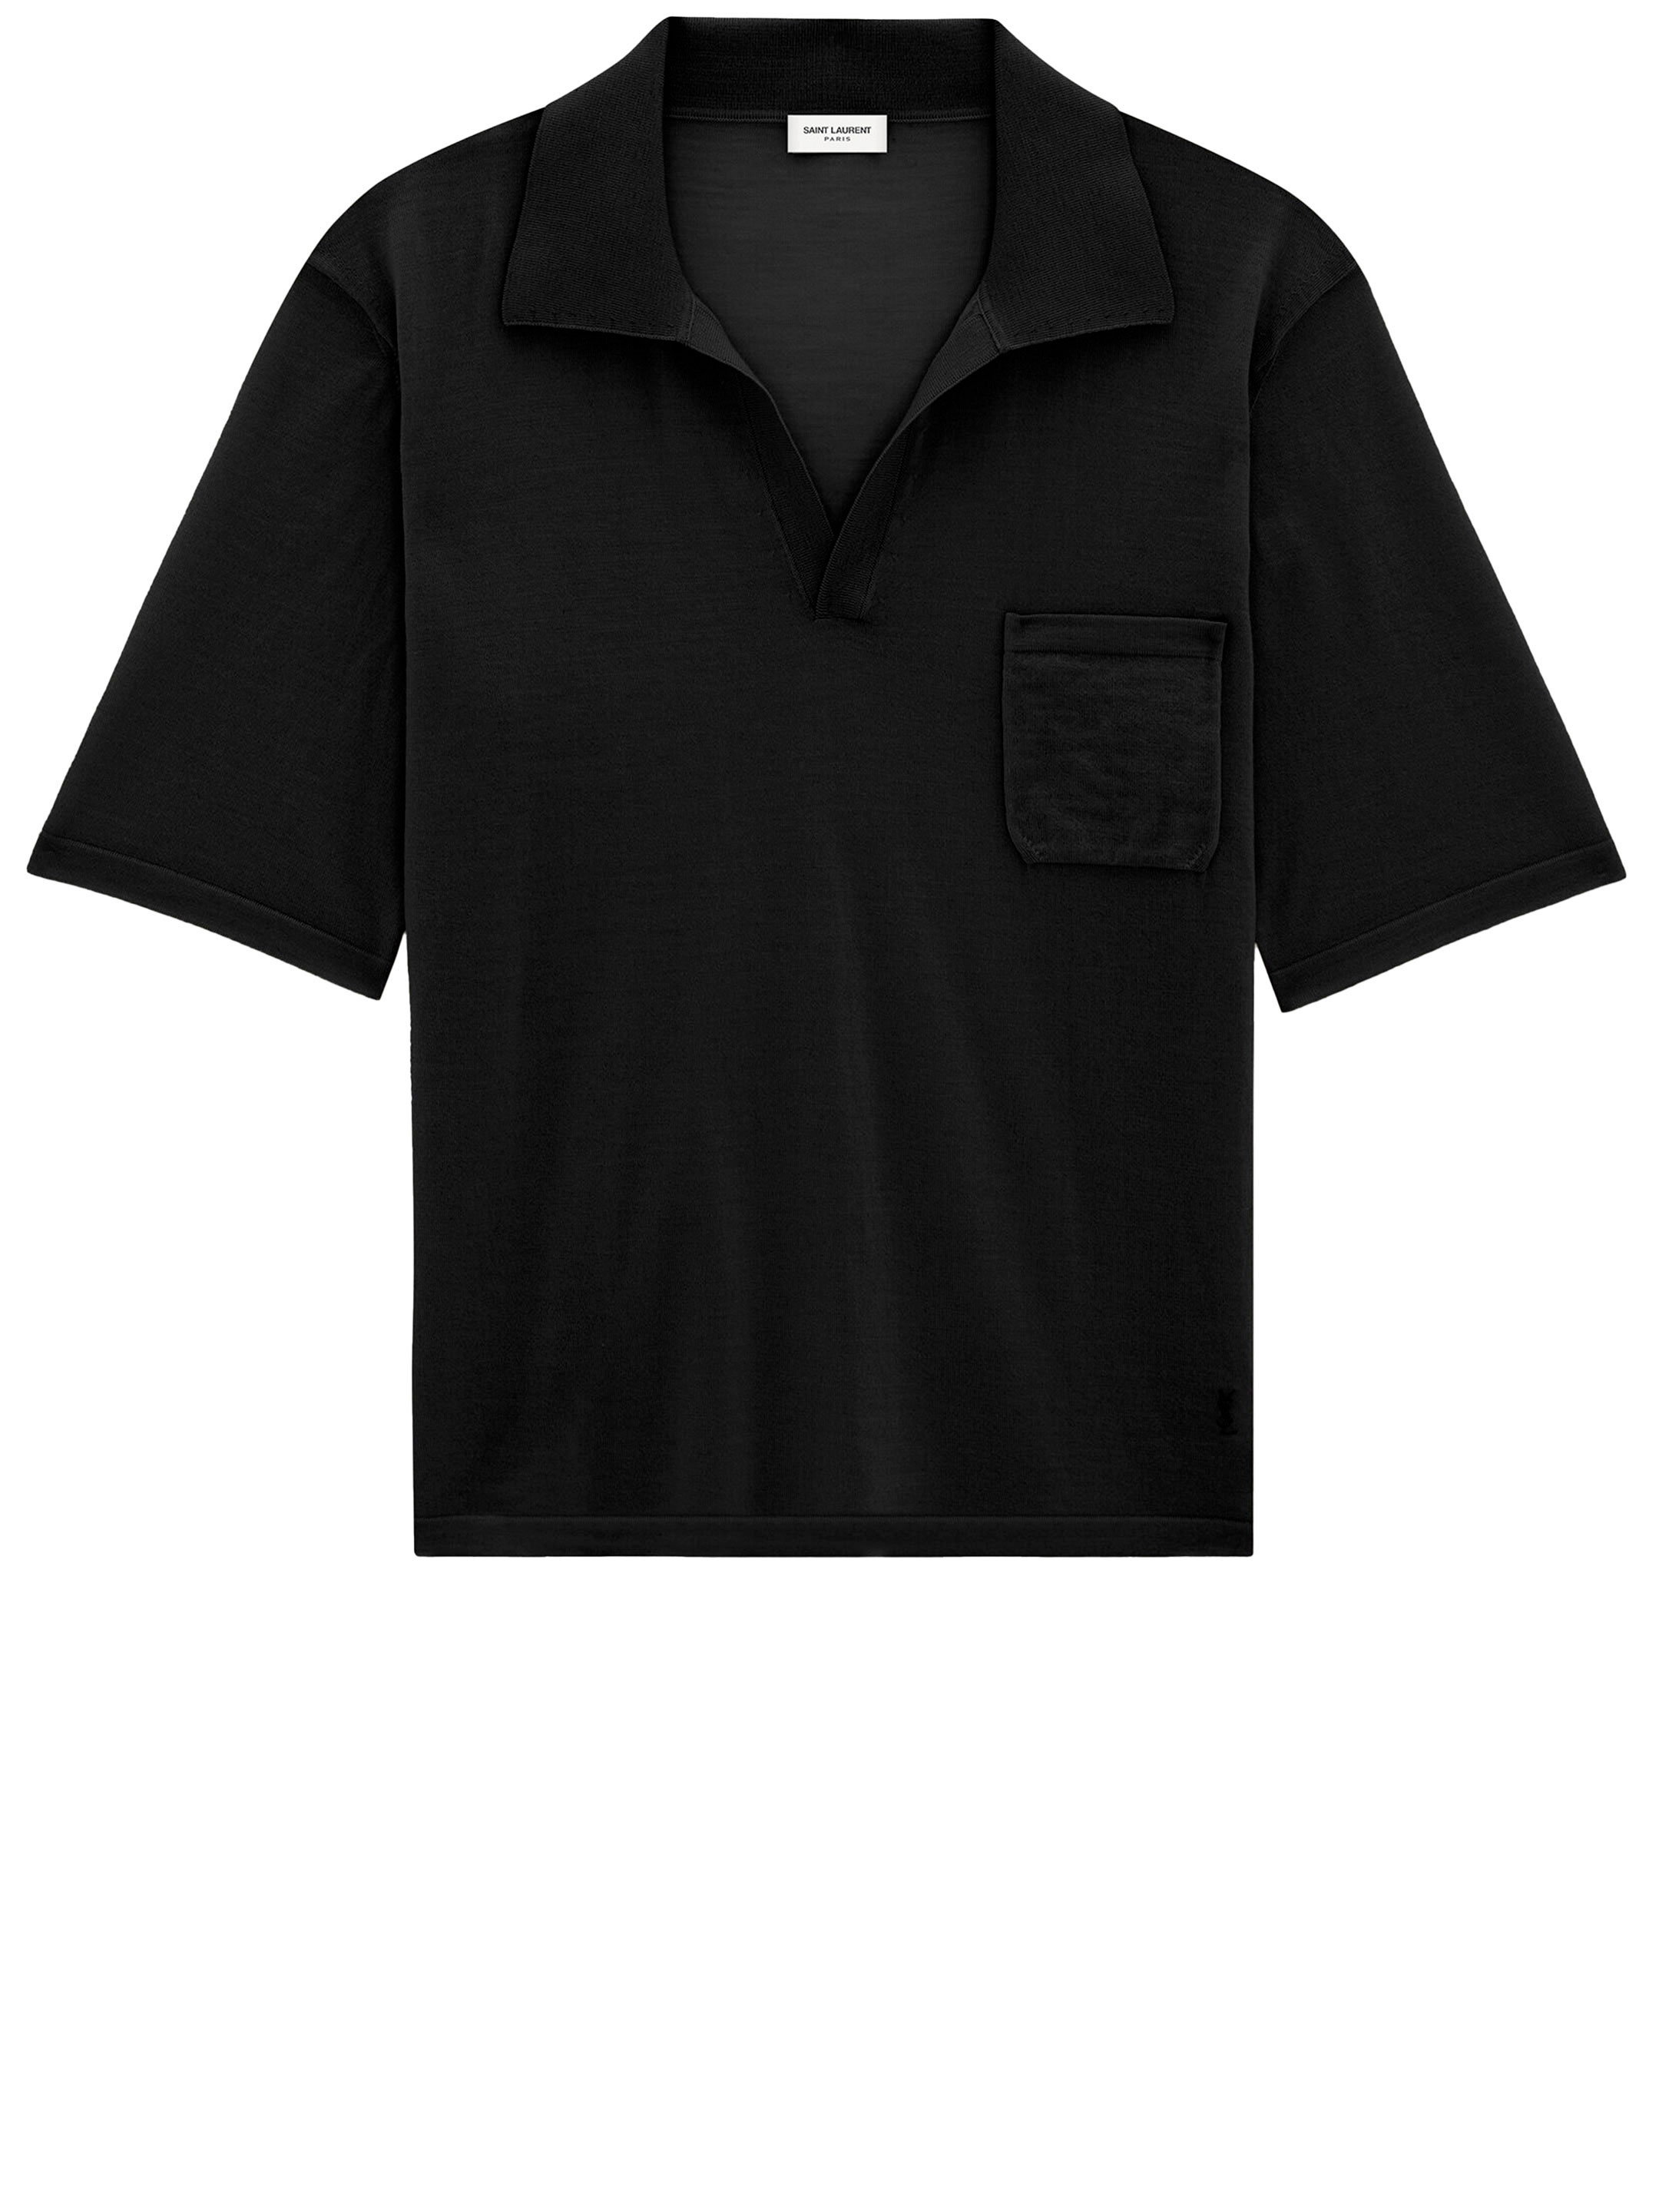 рубашка женская хлопковая с v образным вырезом и вышивкой Рубашка Saint Laurent Cassandre polo, черный